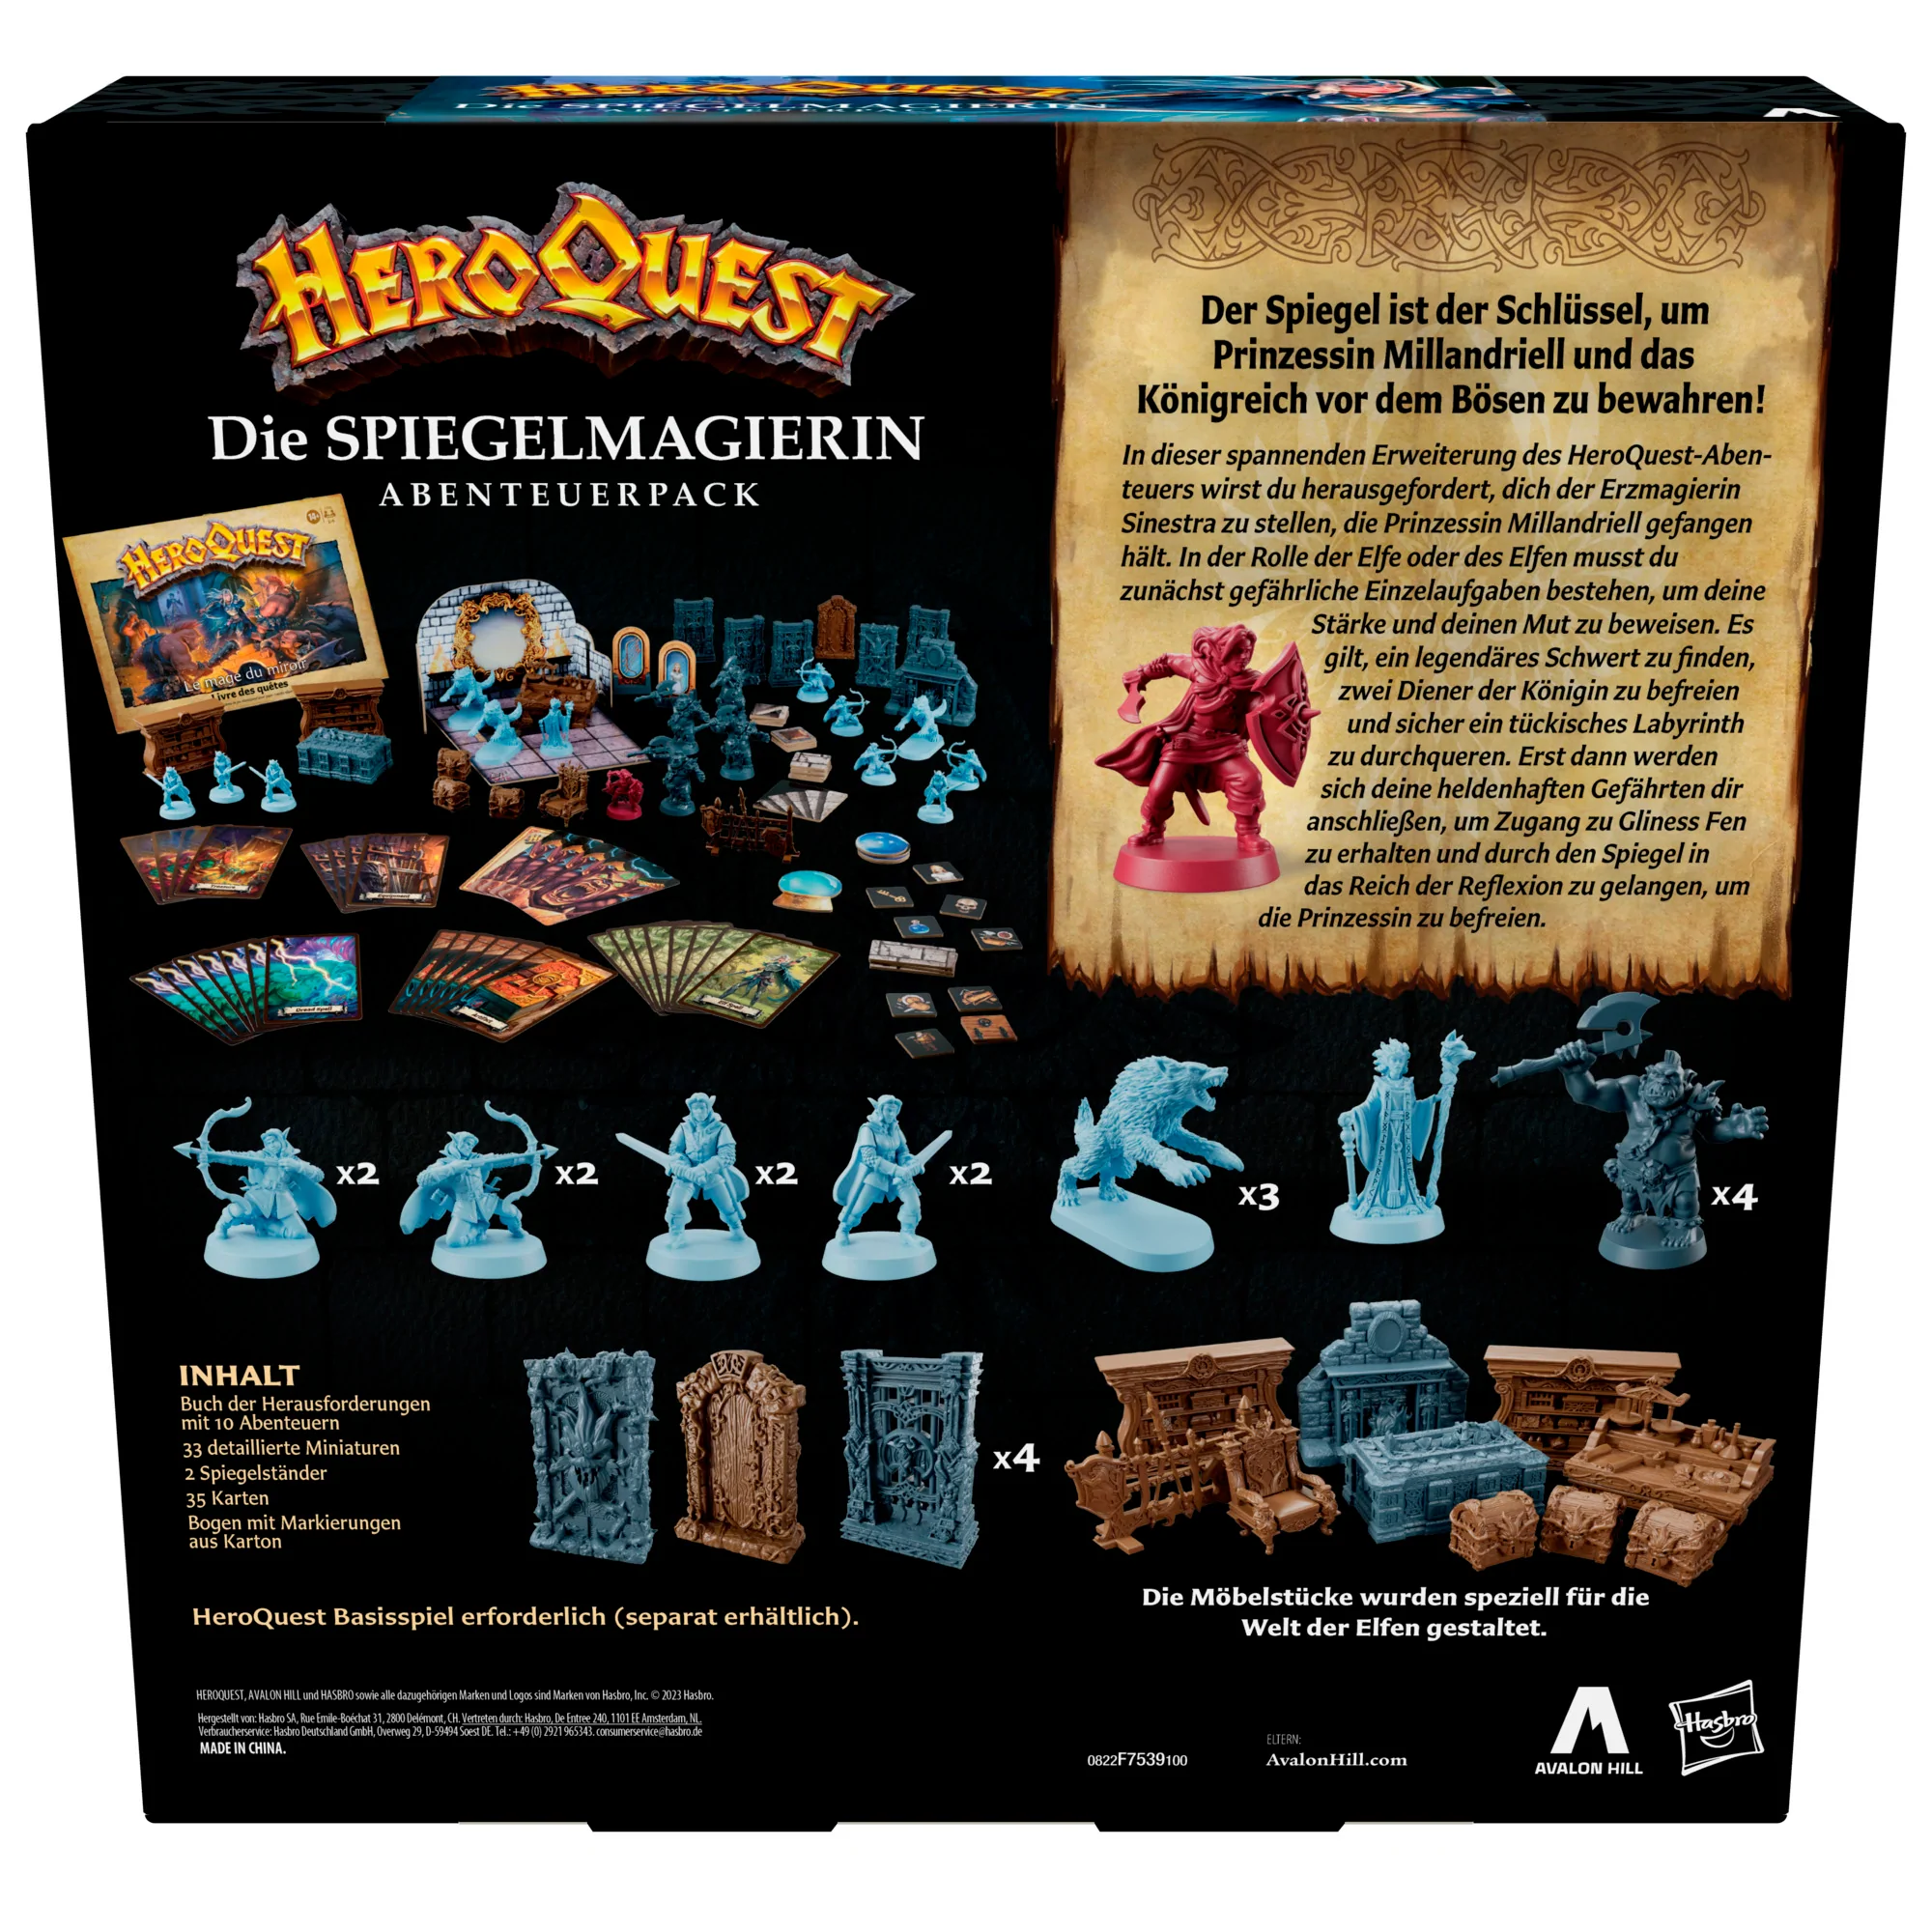 Heroquest - Avalon Hill HeroQuest Die Spiegelmagierin Abenteuerpack - DE F75391000 5010994203276